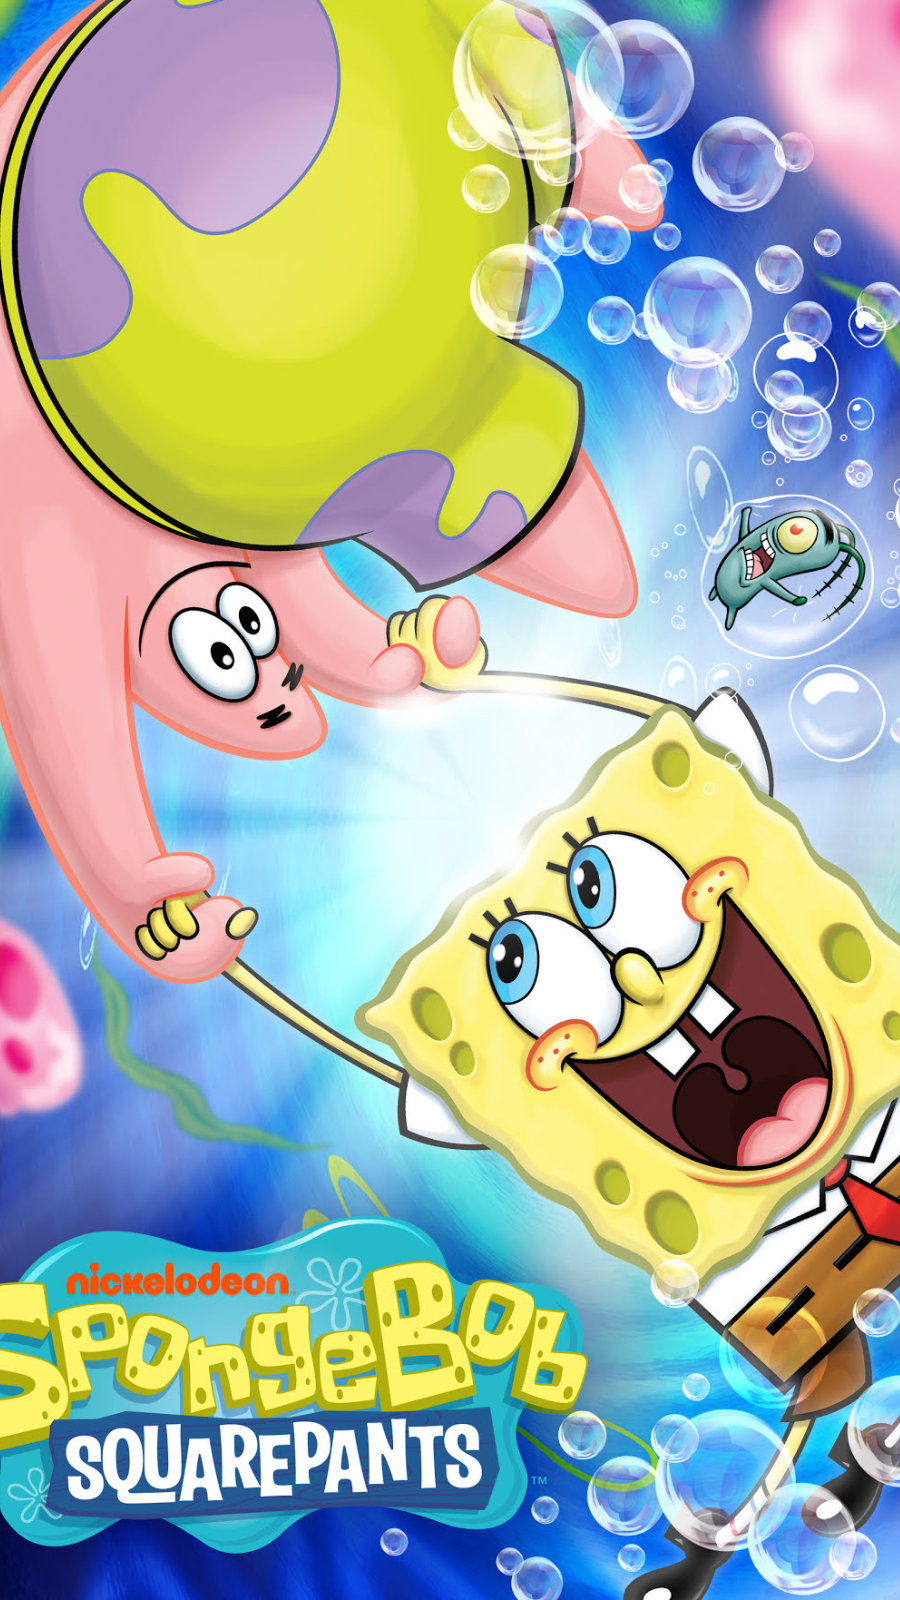 SpongeBob SquarePants' 25th Anniversary: Everything we know so far 